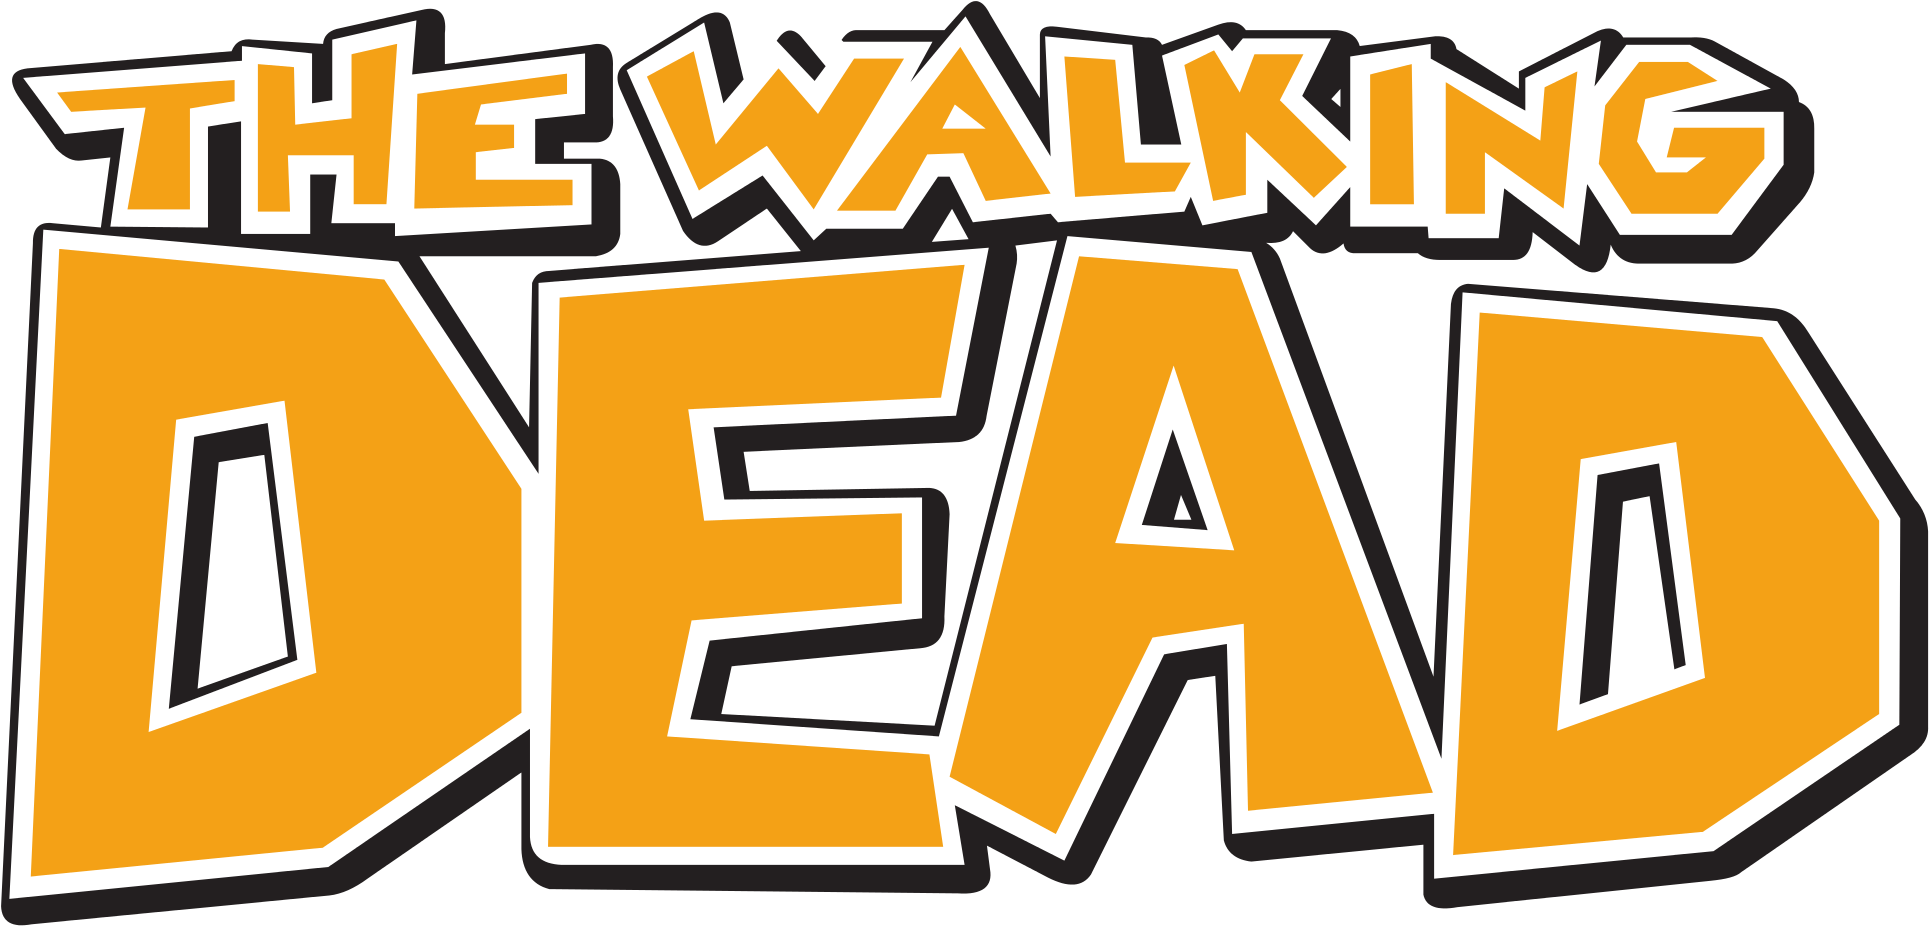 The Walking Dead Clipart Logo - Walking Dead #103 Comic Book (2000x991)